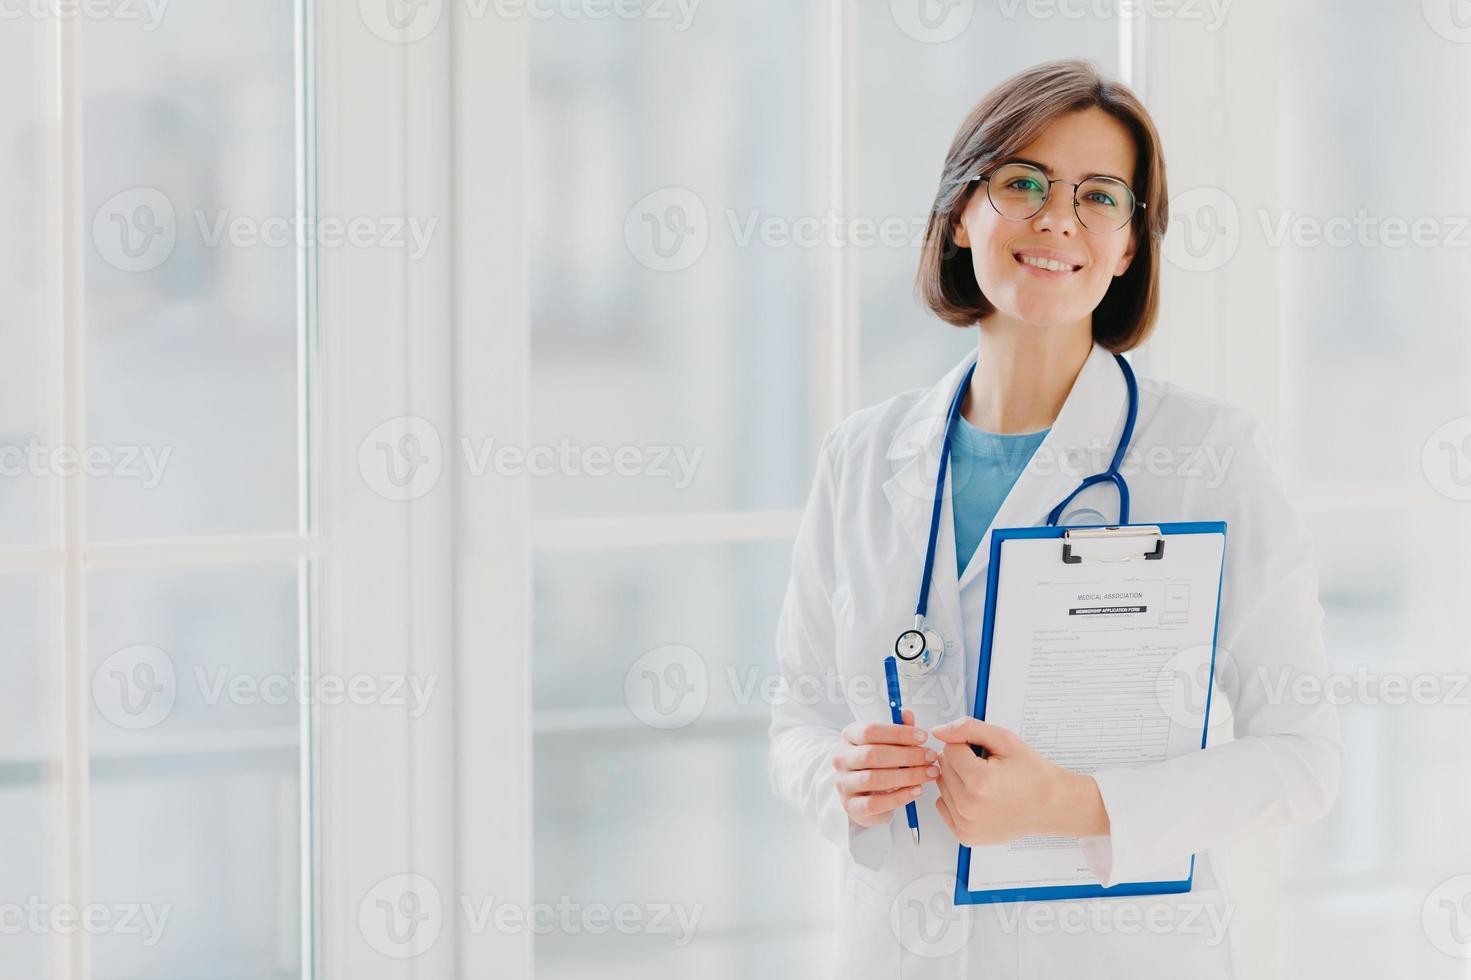 horizontaal schot van vrouw arts staat met klembord, vult aanvraagformulier, houdt pen vast, glimlacht positief, geniet van haar werk, helpt mensen, staat in witte medische jurk tegen groot raam foto